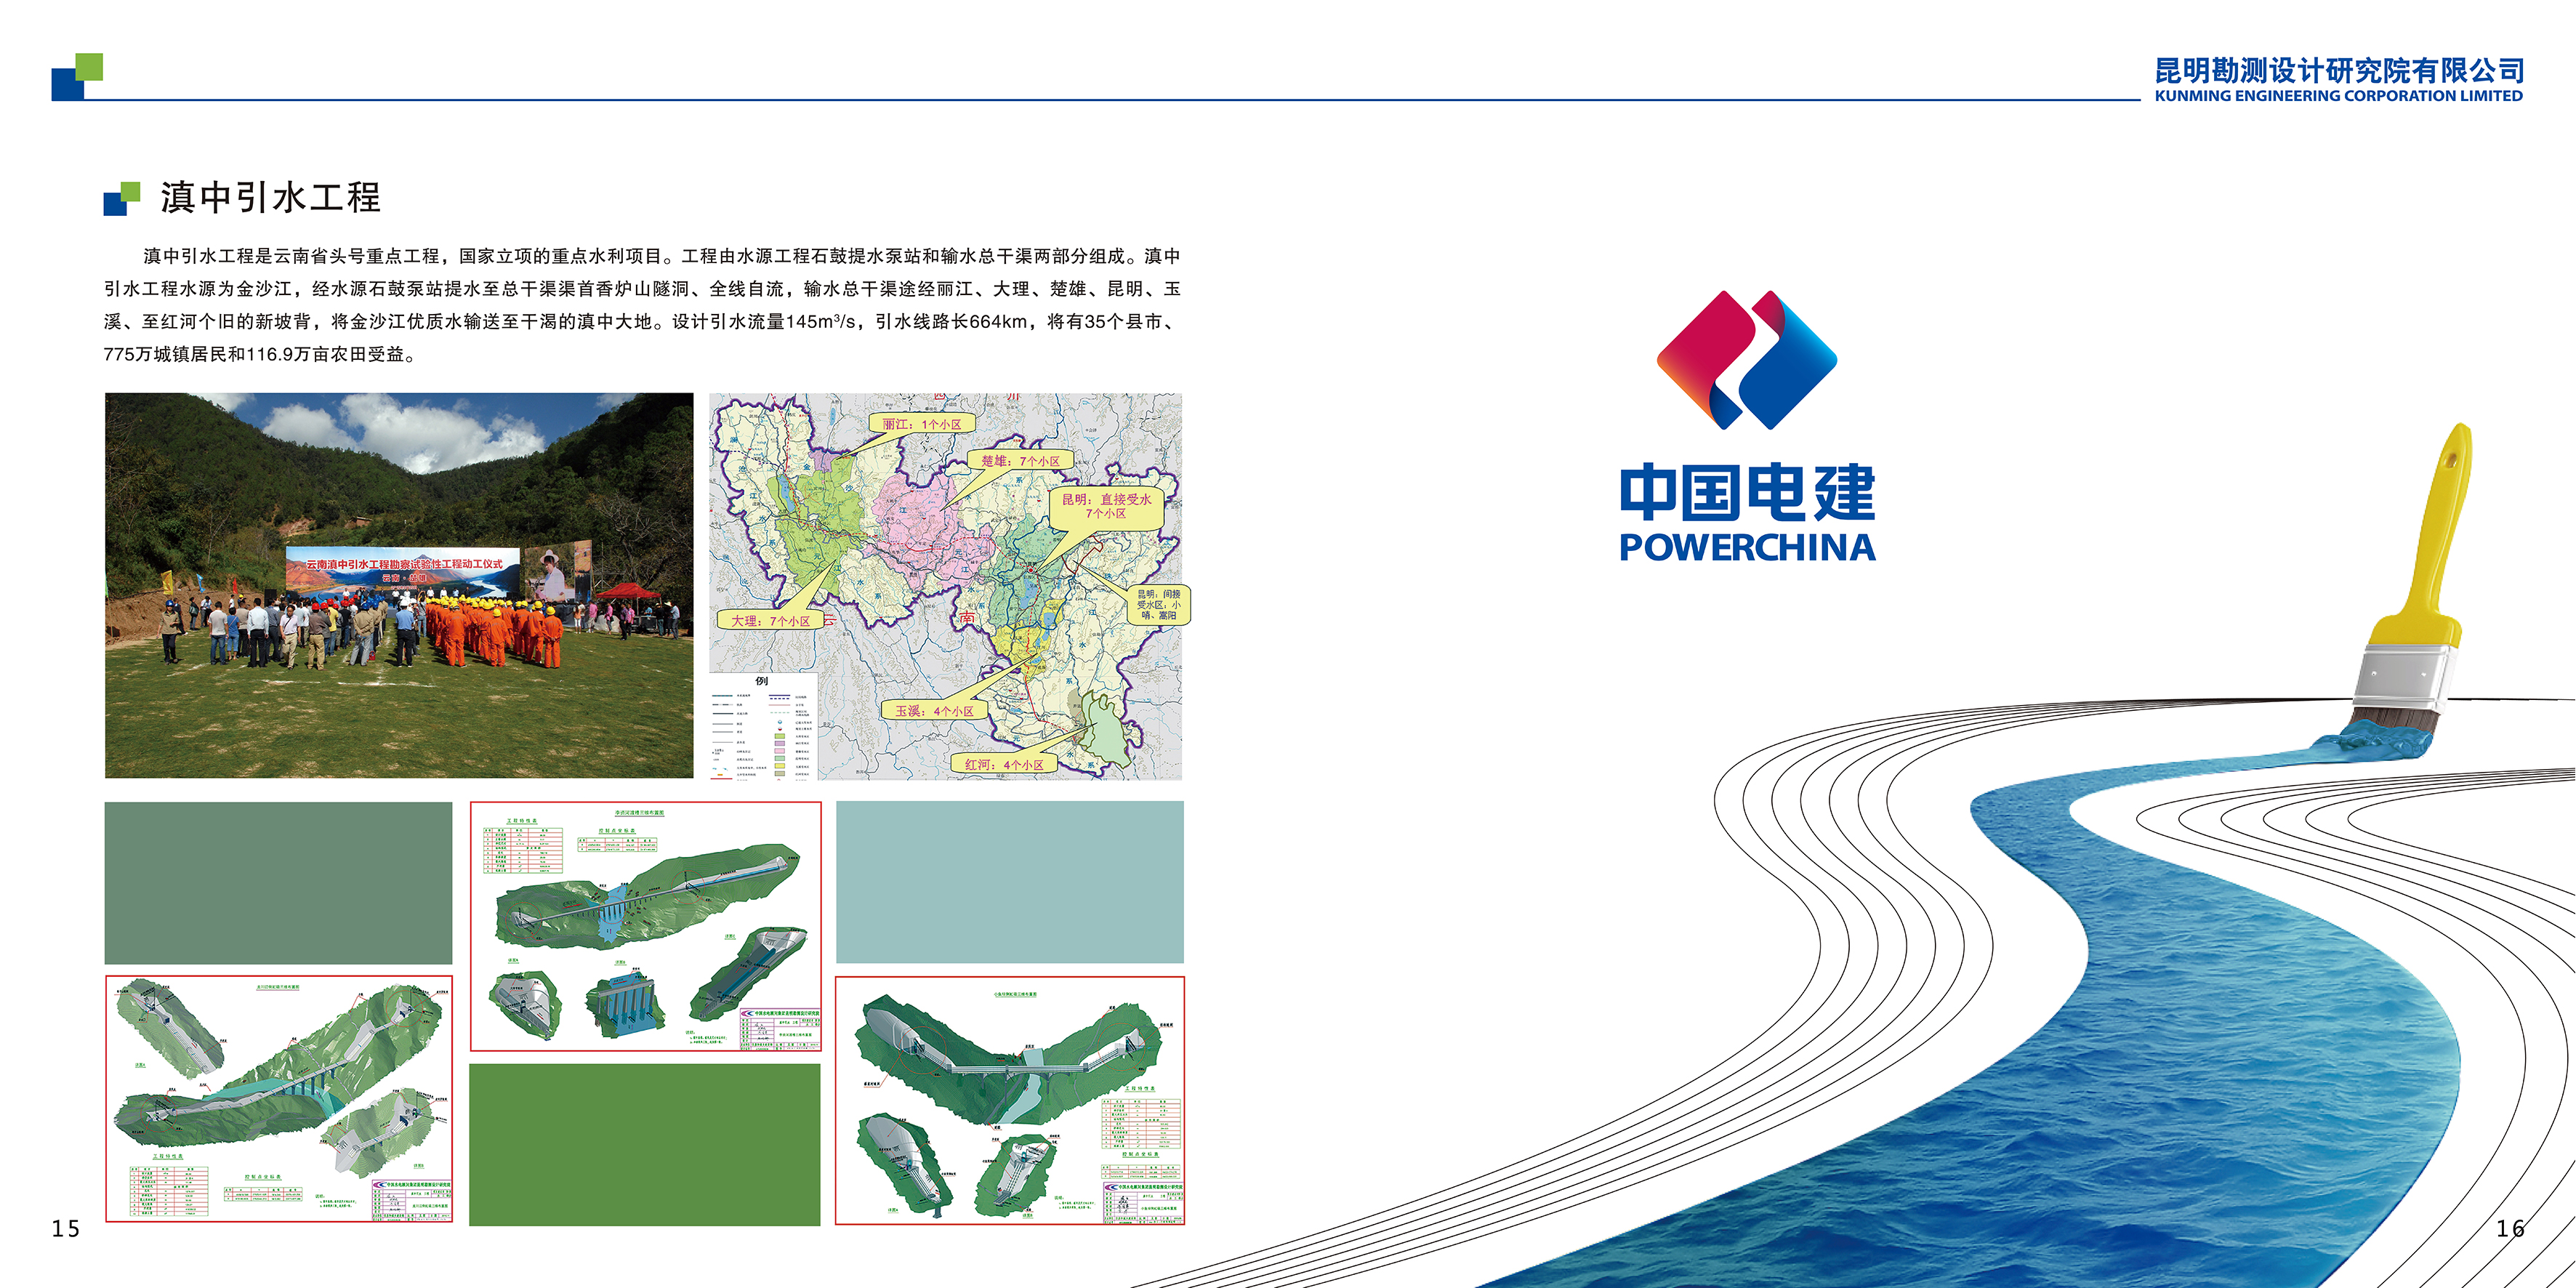 三、中国电建集团昆明勘测设计研究院宣传画册_11.png